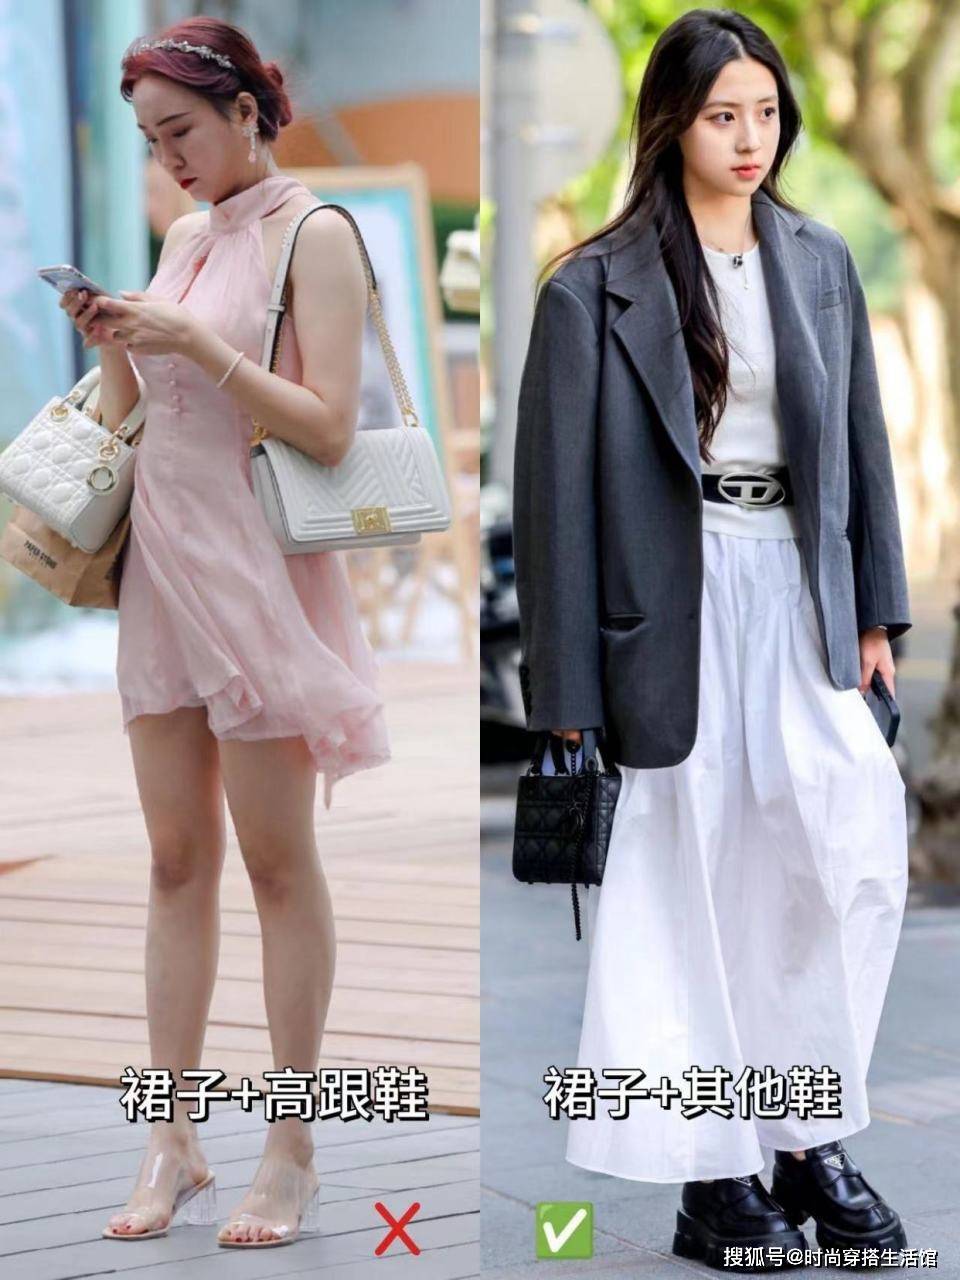 被“上海女孩”圈了，出门很少穿裙子和高跟鞋，但都很高级很时尚。